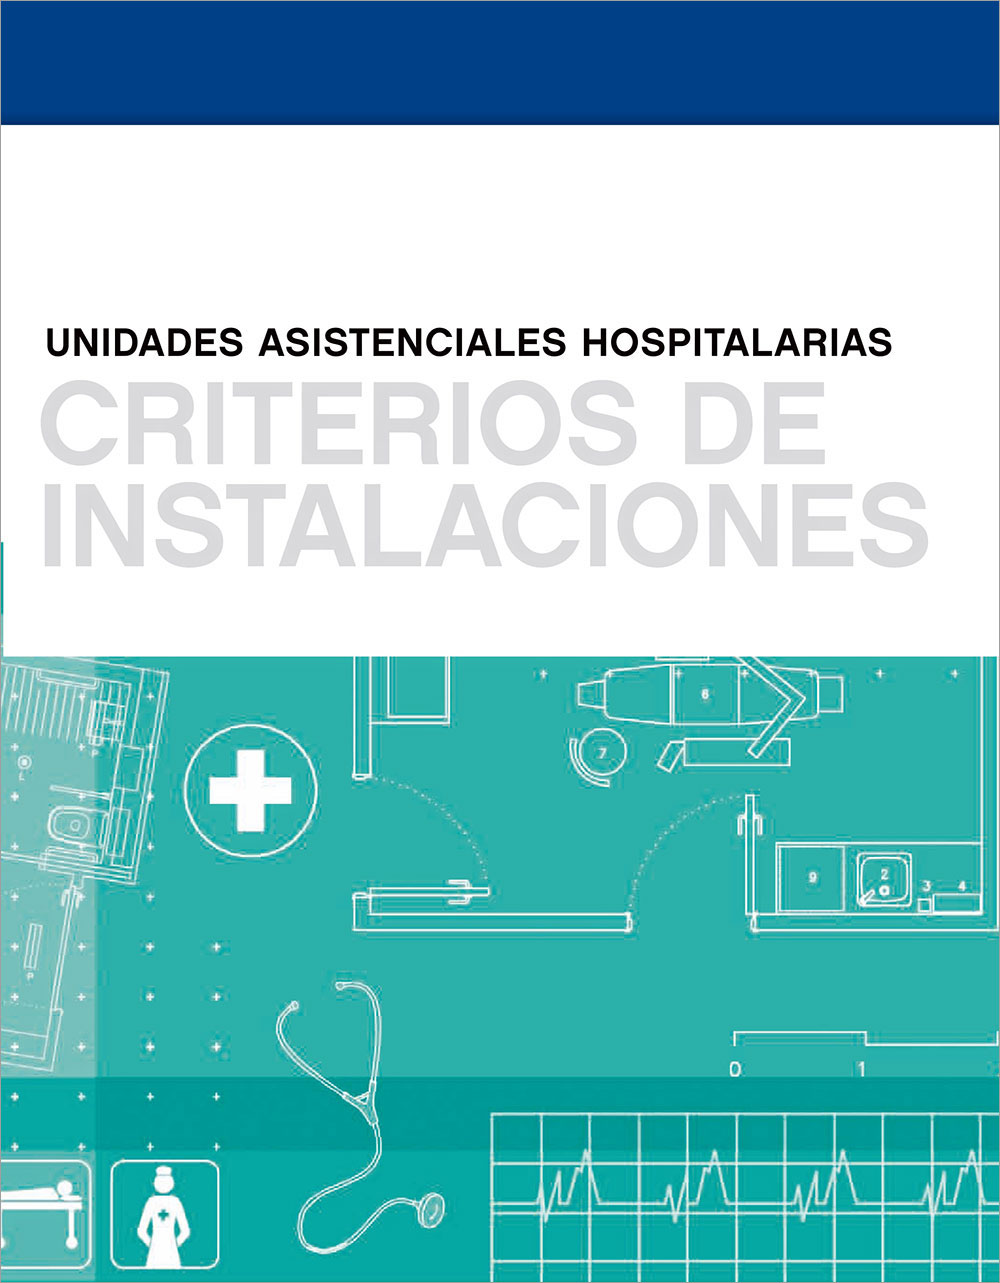 Unidades asistenciales hospitalarias: Criterios de instalaciones